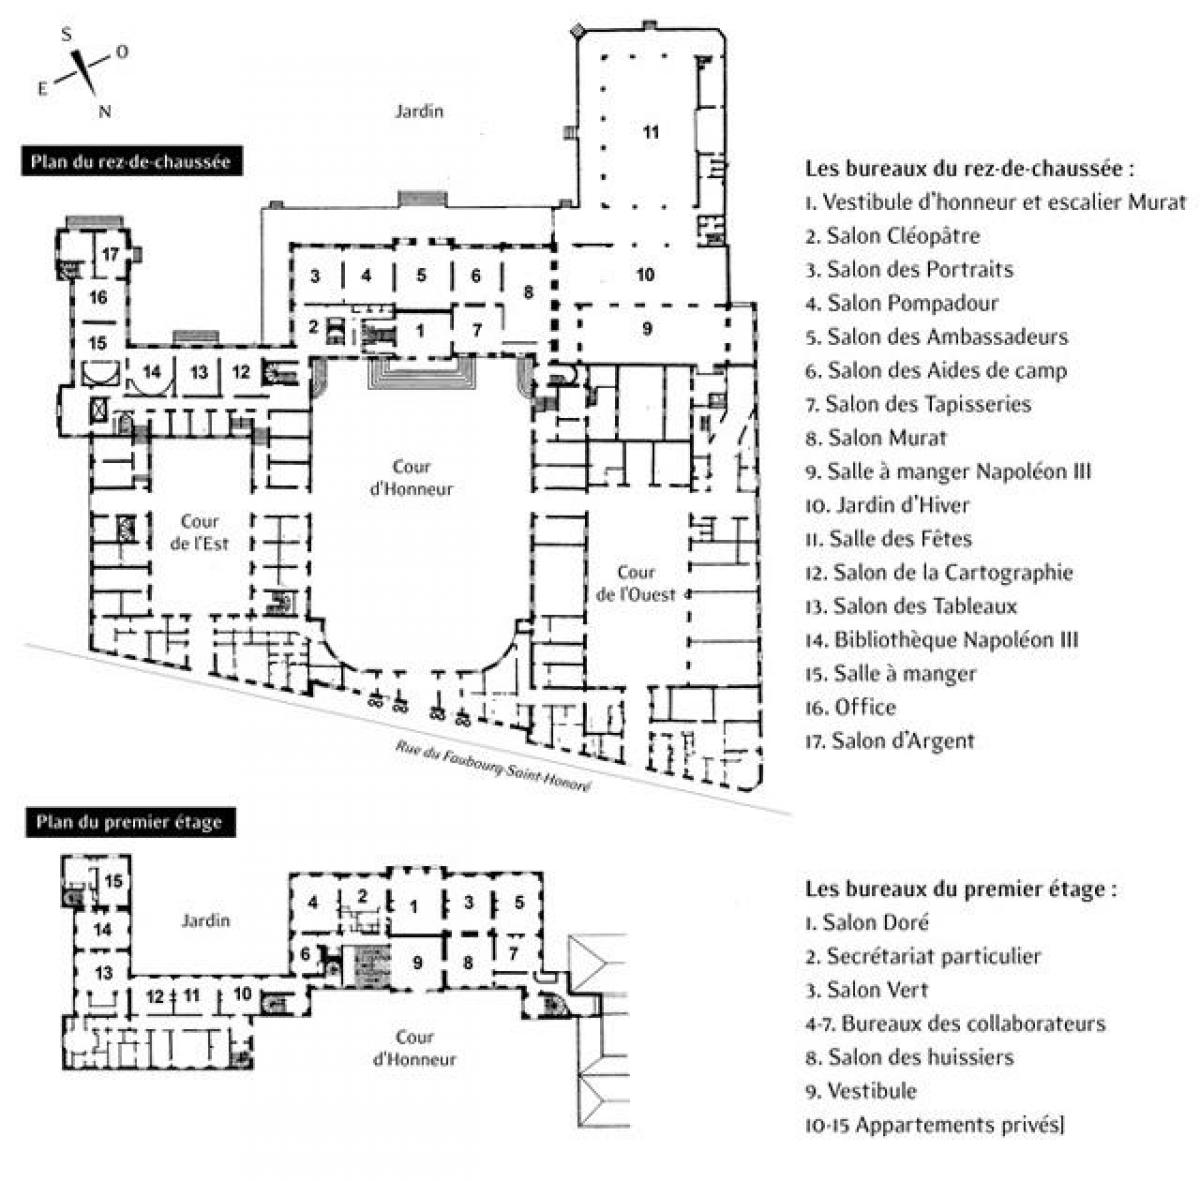 Peta dari elysee Palace